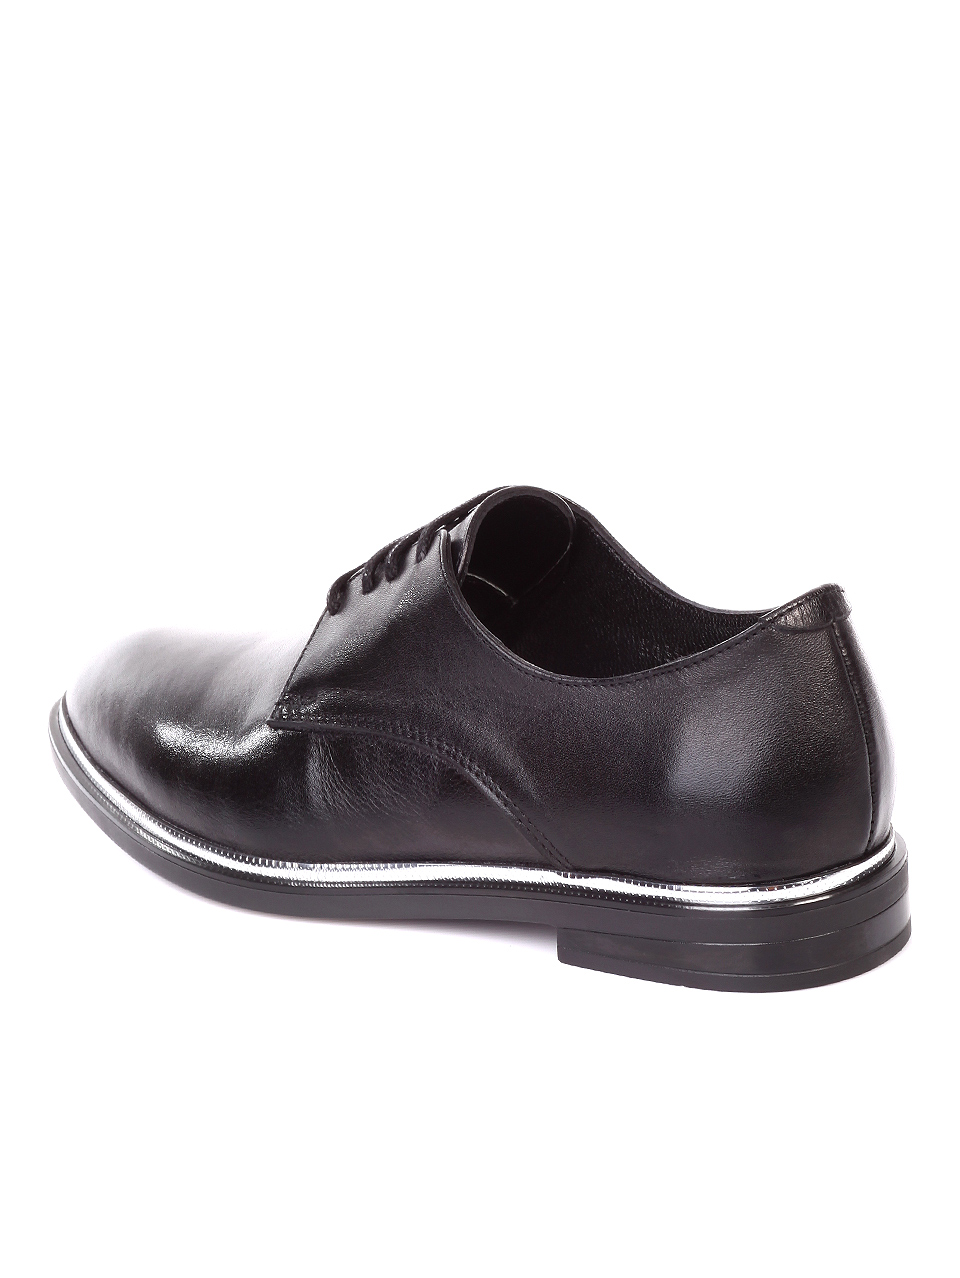 Ежедневни дамски обувки от естествена кожа в черно 3AT-19896 black